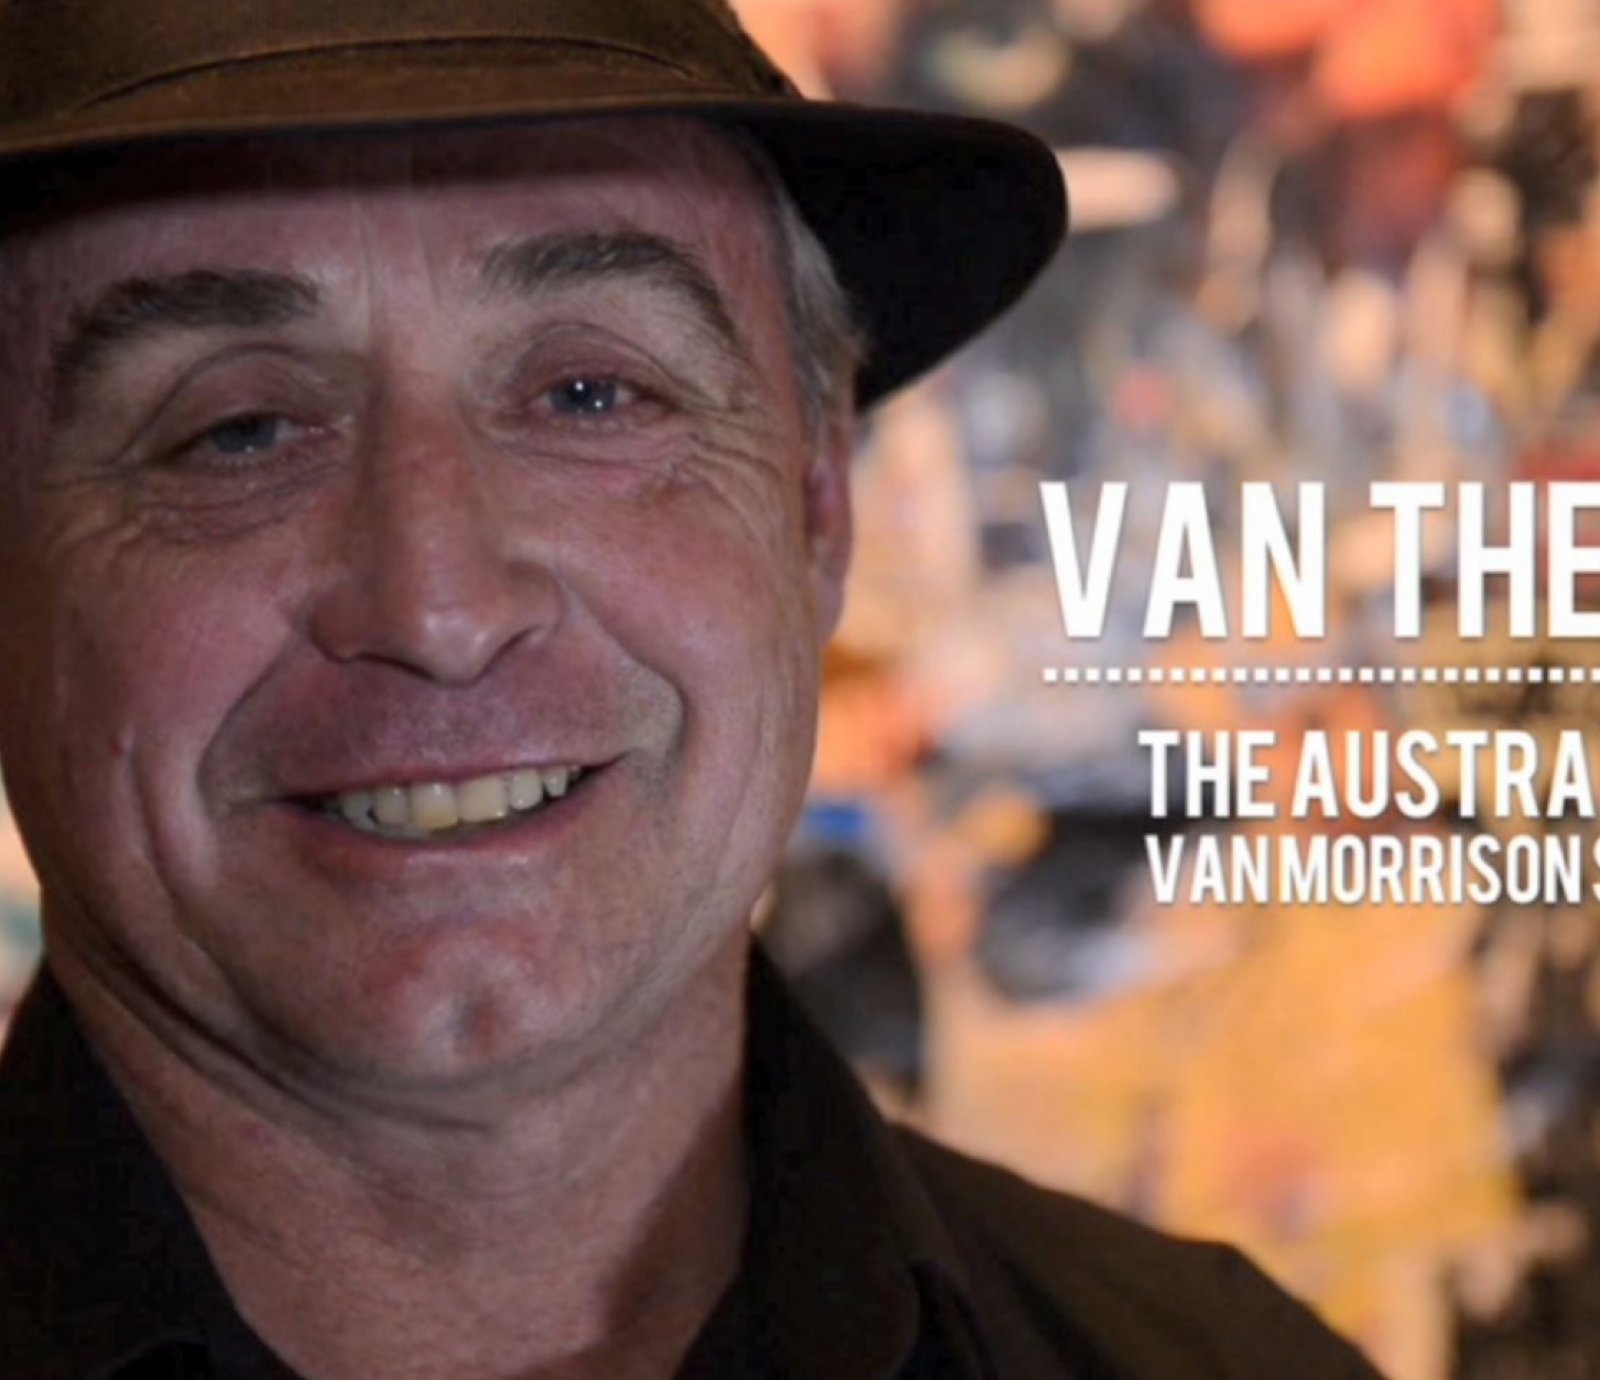 Van the Man